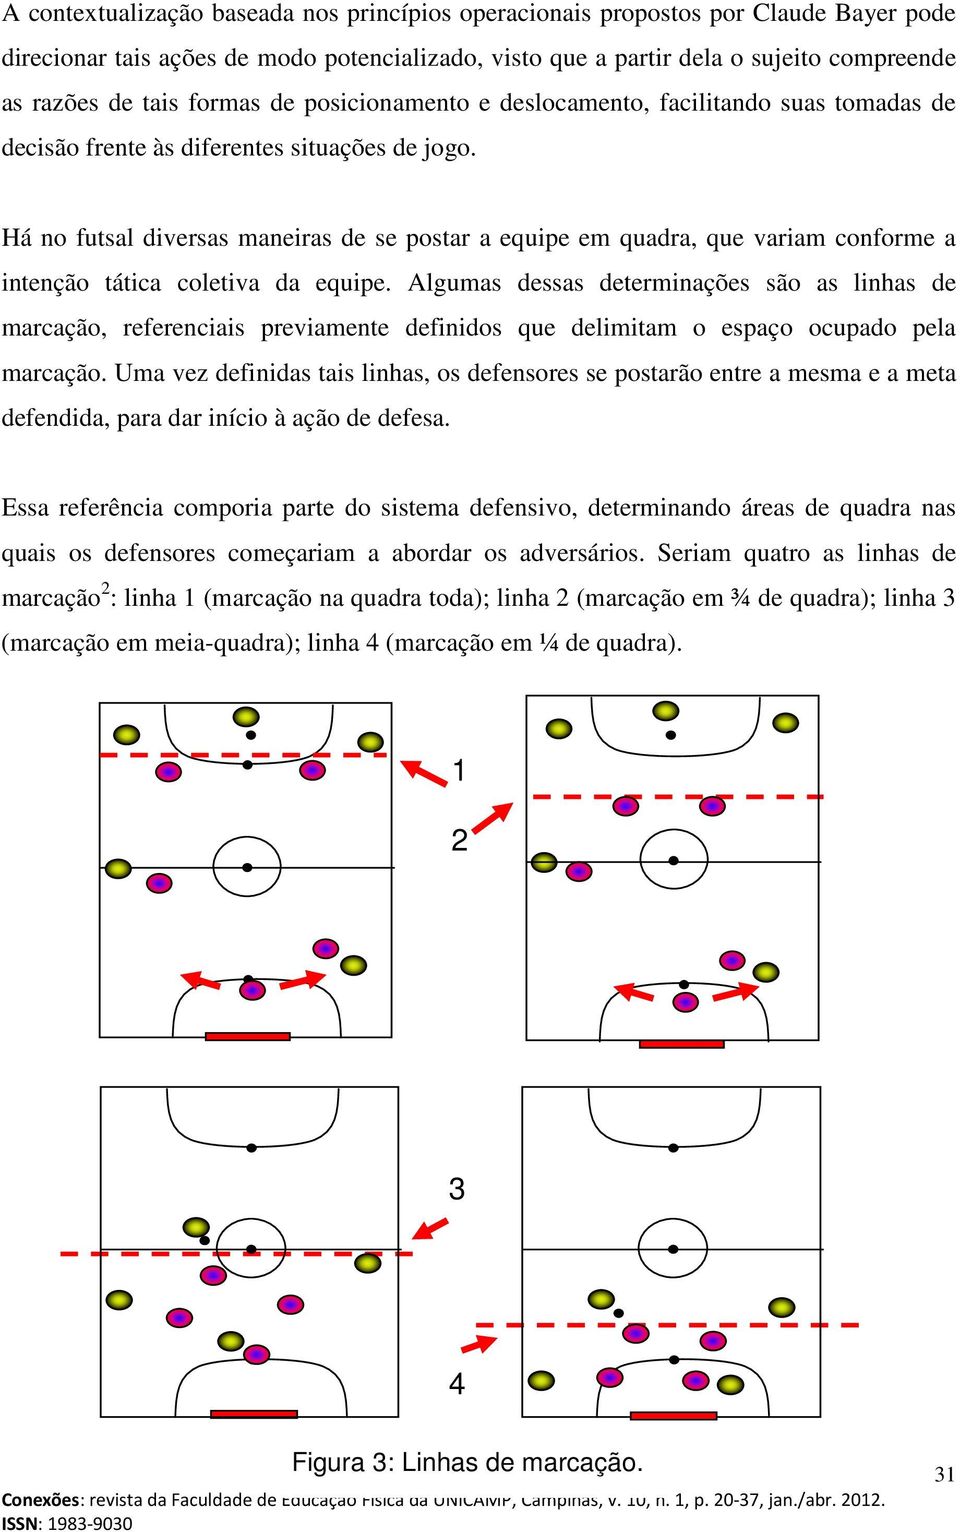 Há no futsal diversas maneiras de se postar a equipe em quadra, que variam conforme a intenção tática coletiva da equipe.